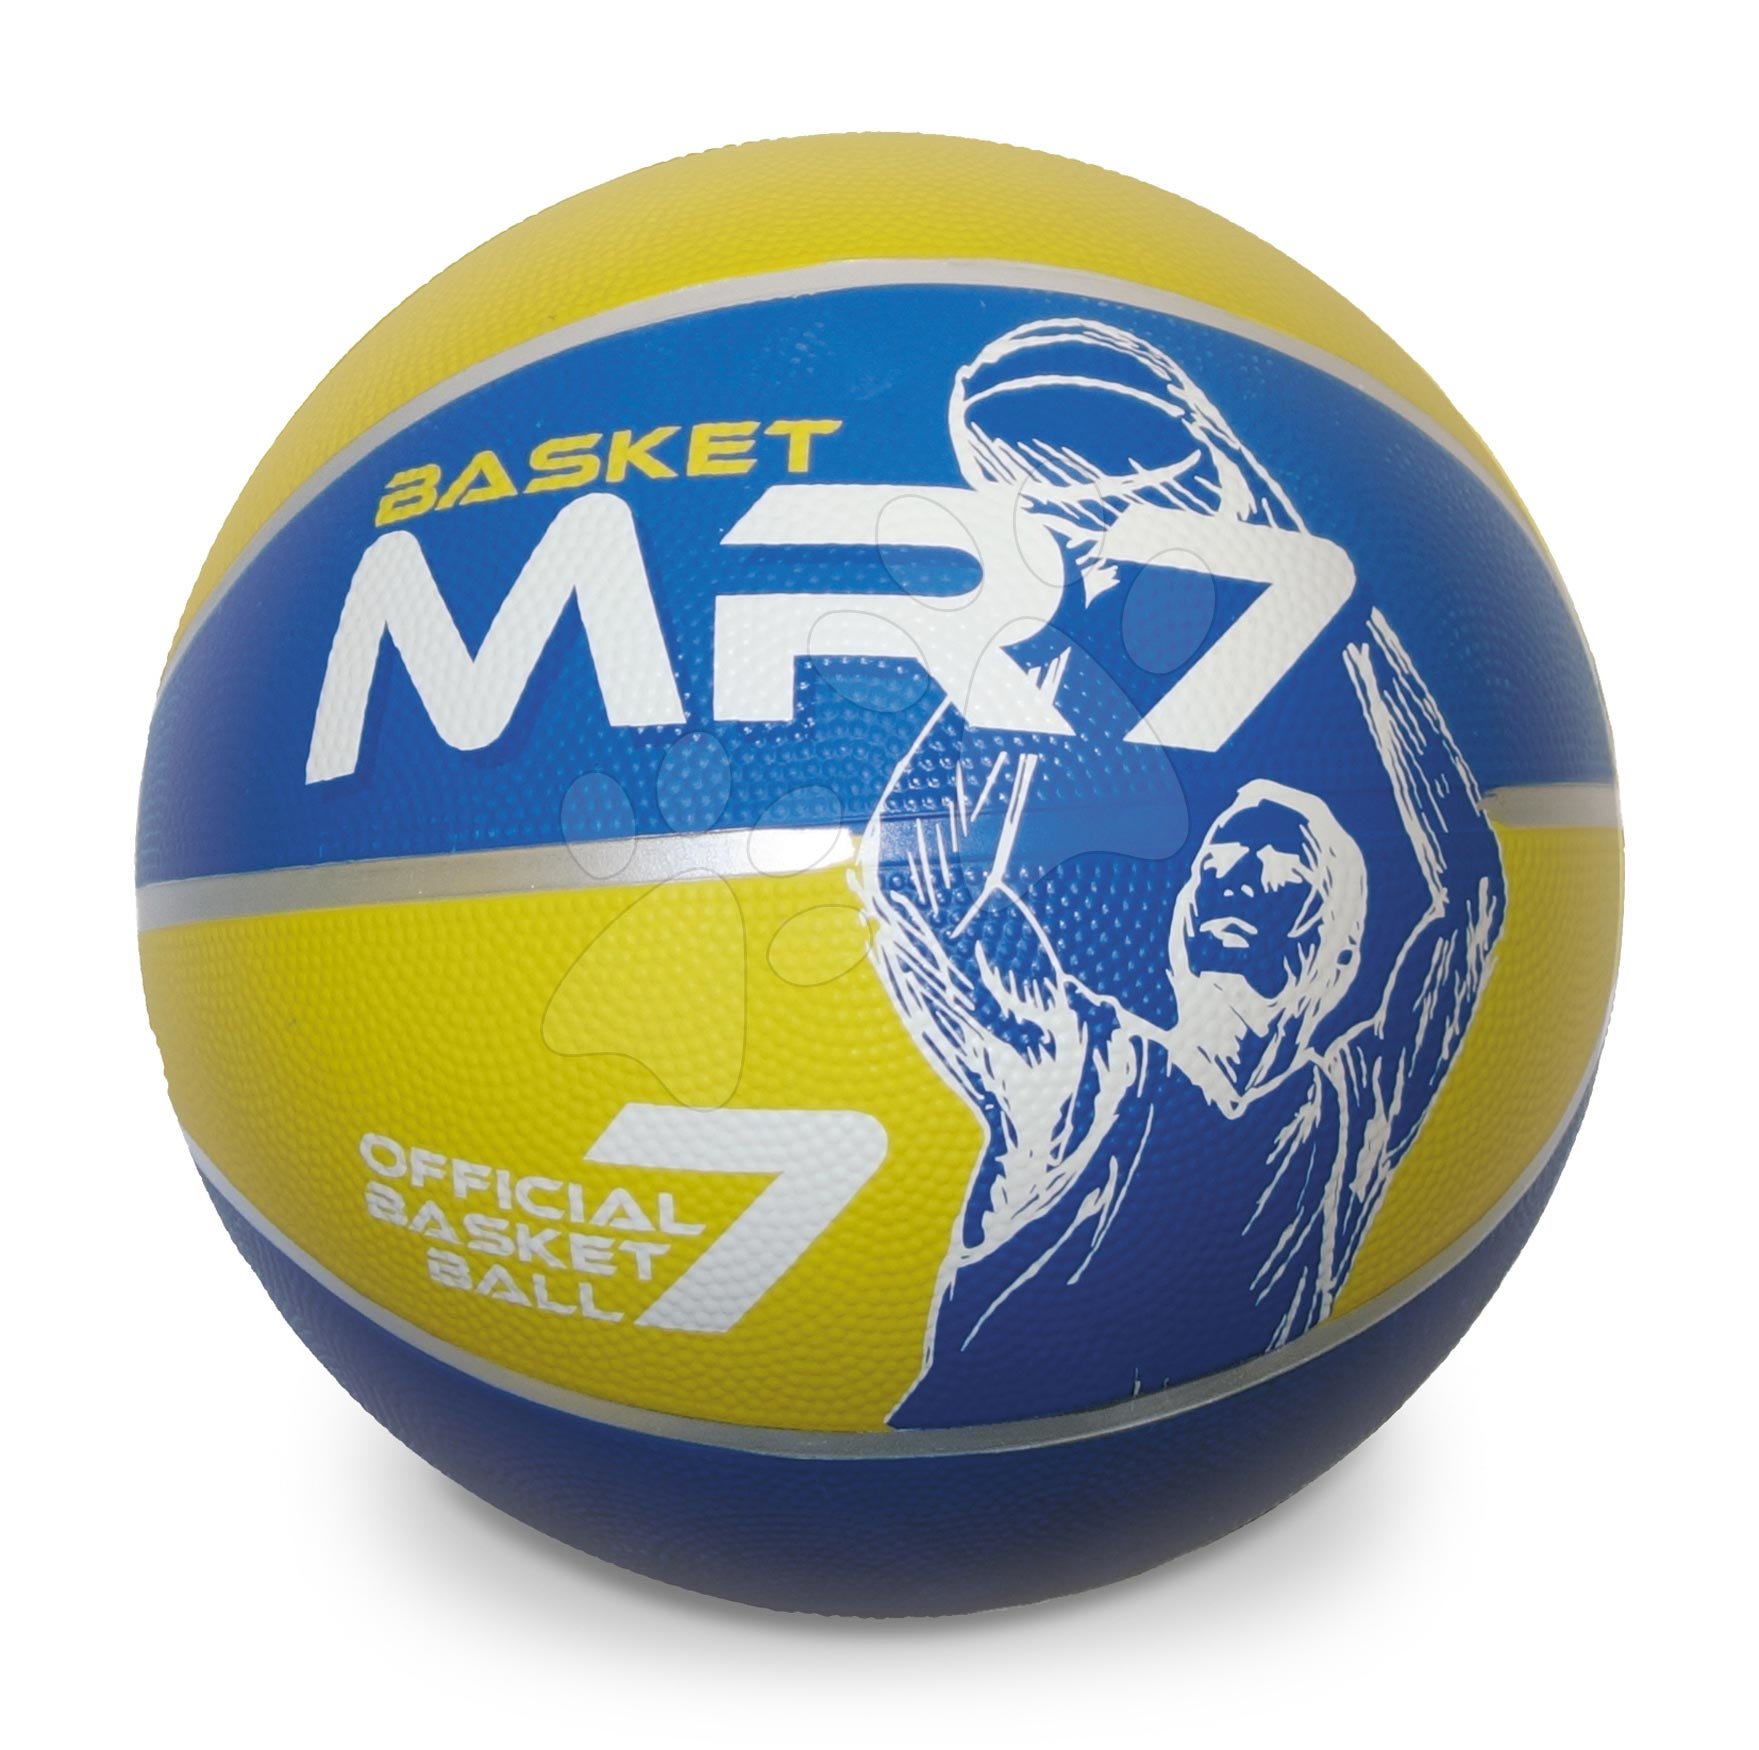 Sportovní míče - Basketbalový míč Basket MR7 Mondo velikost 7 váha 600 g